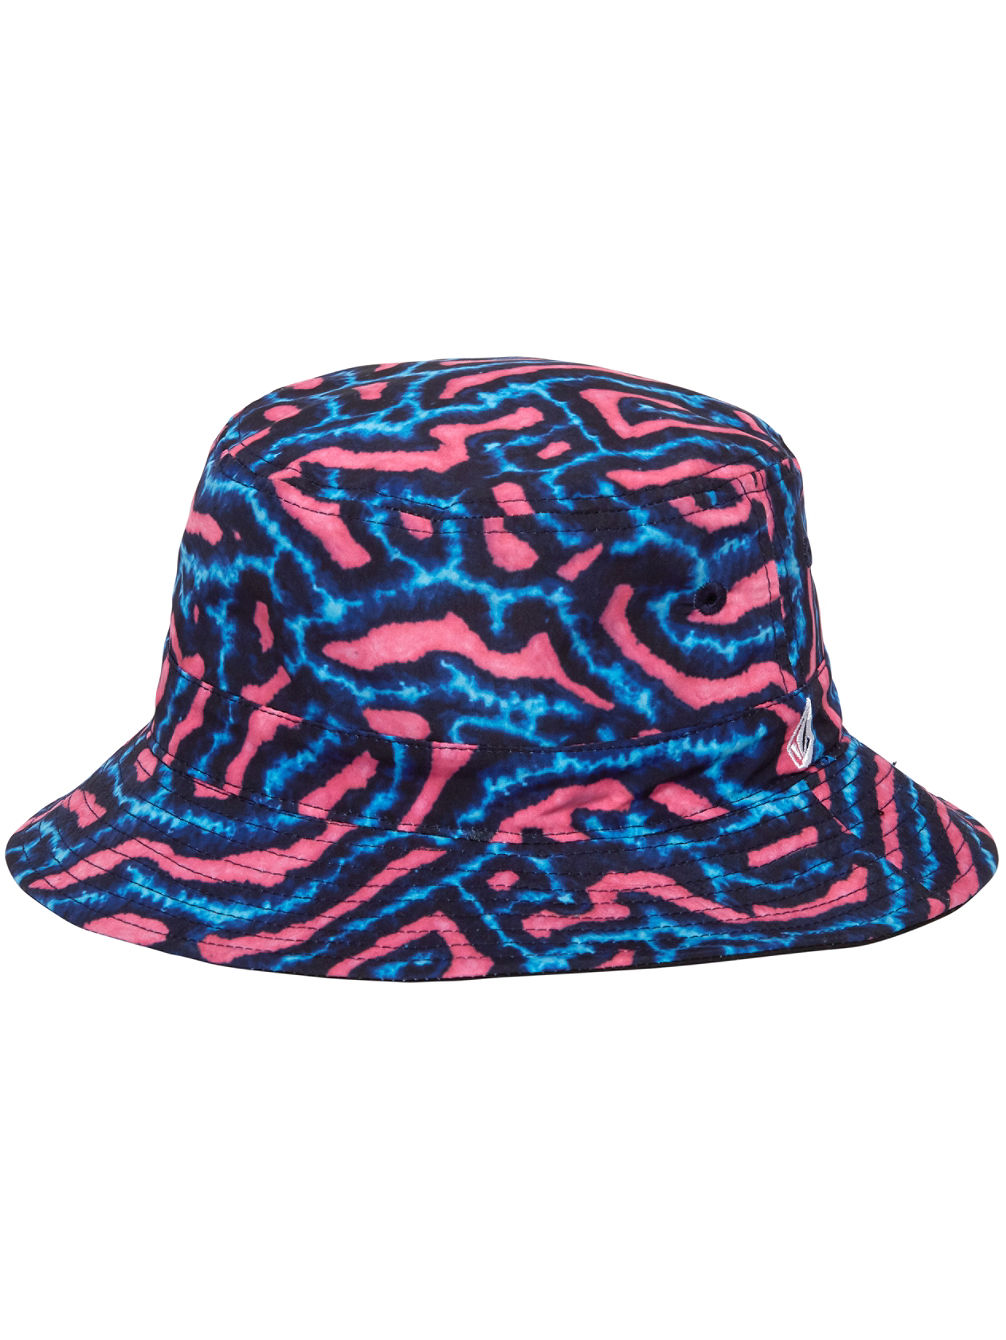 Coral Morph Bucket Sombrero